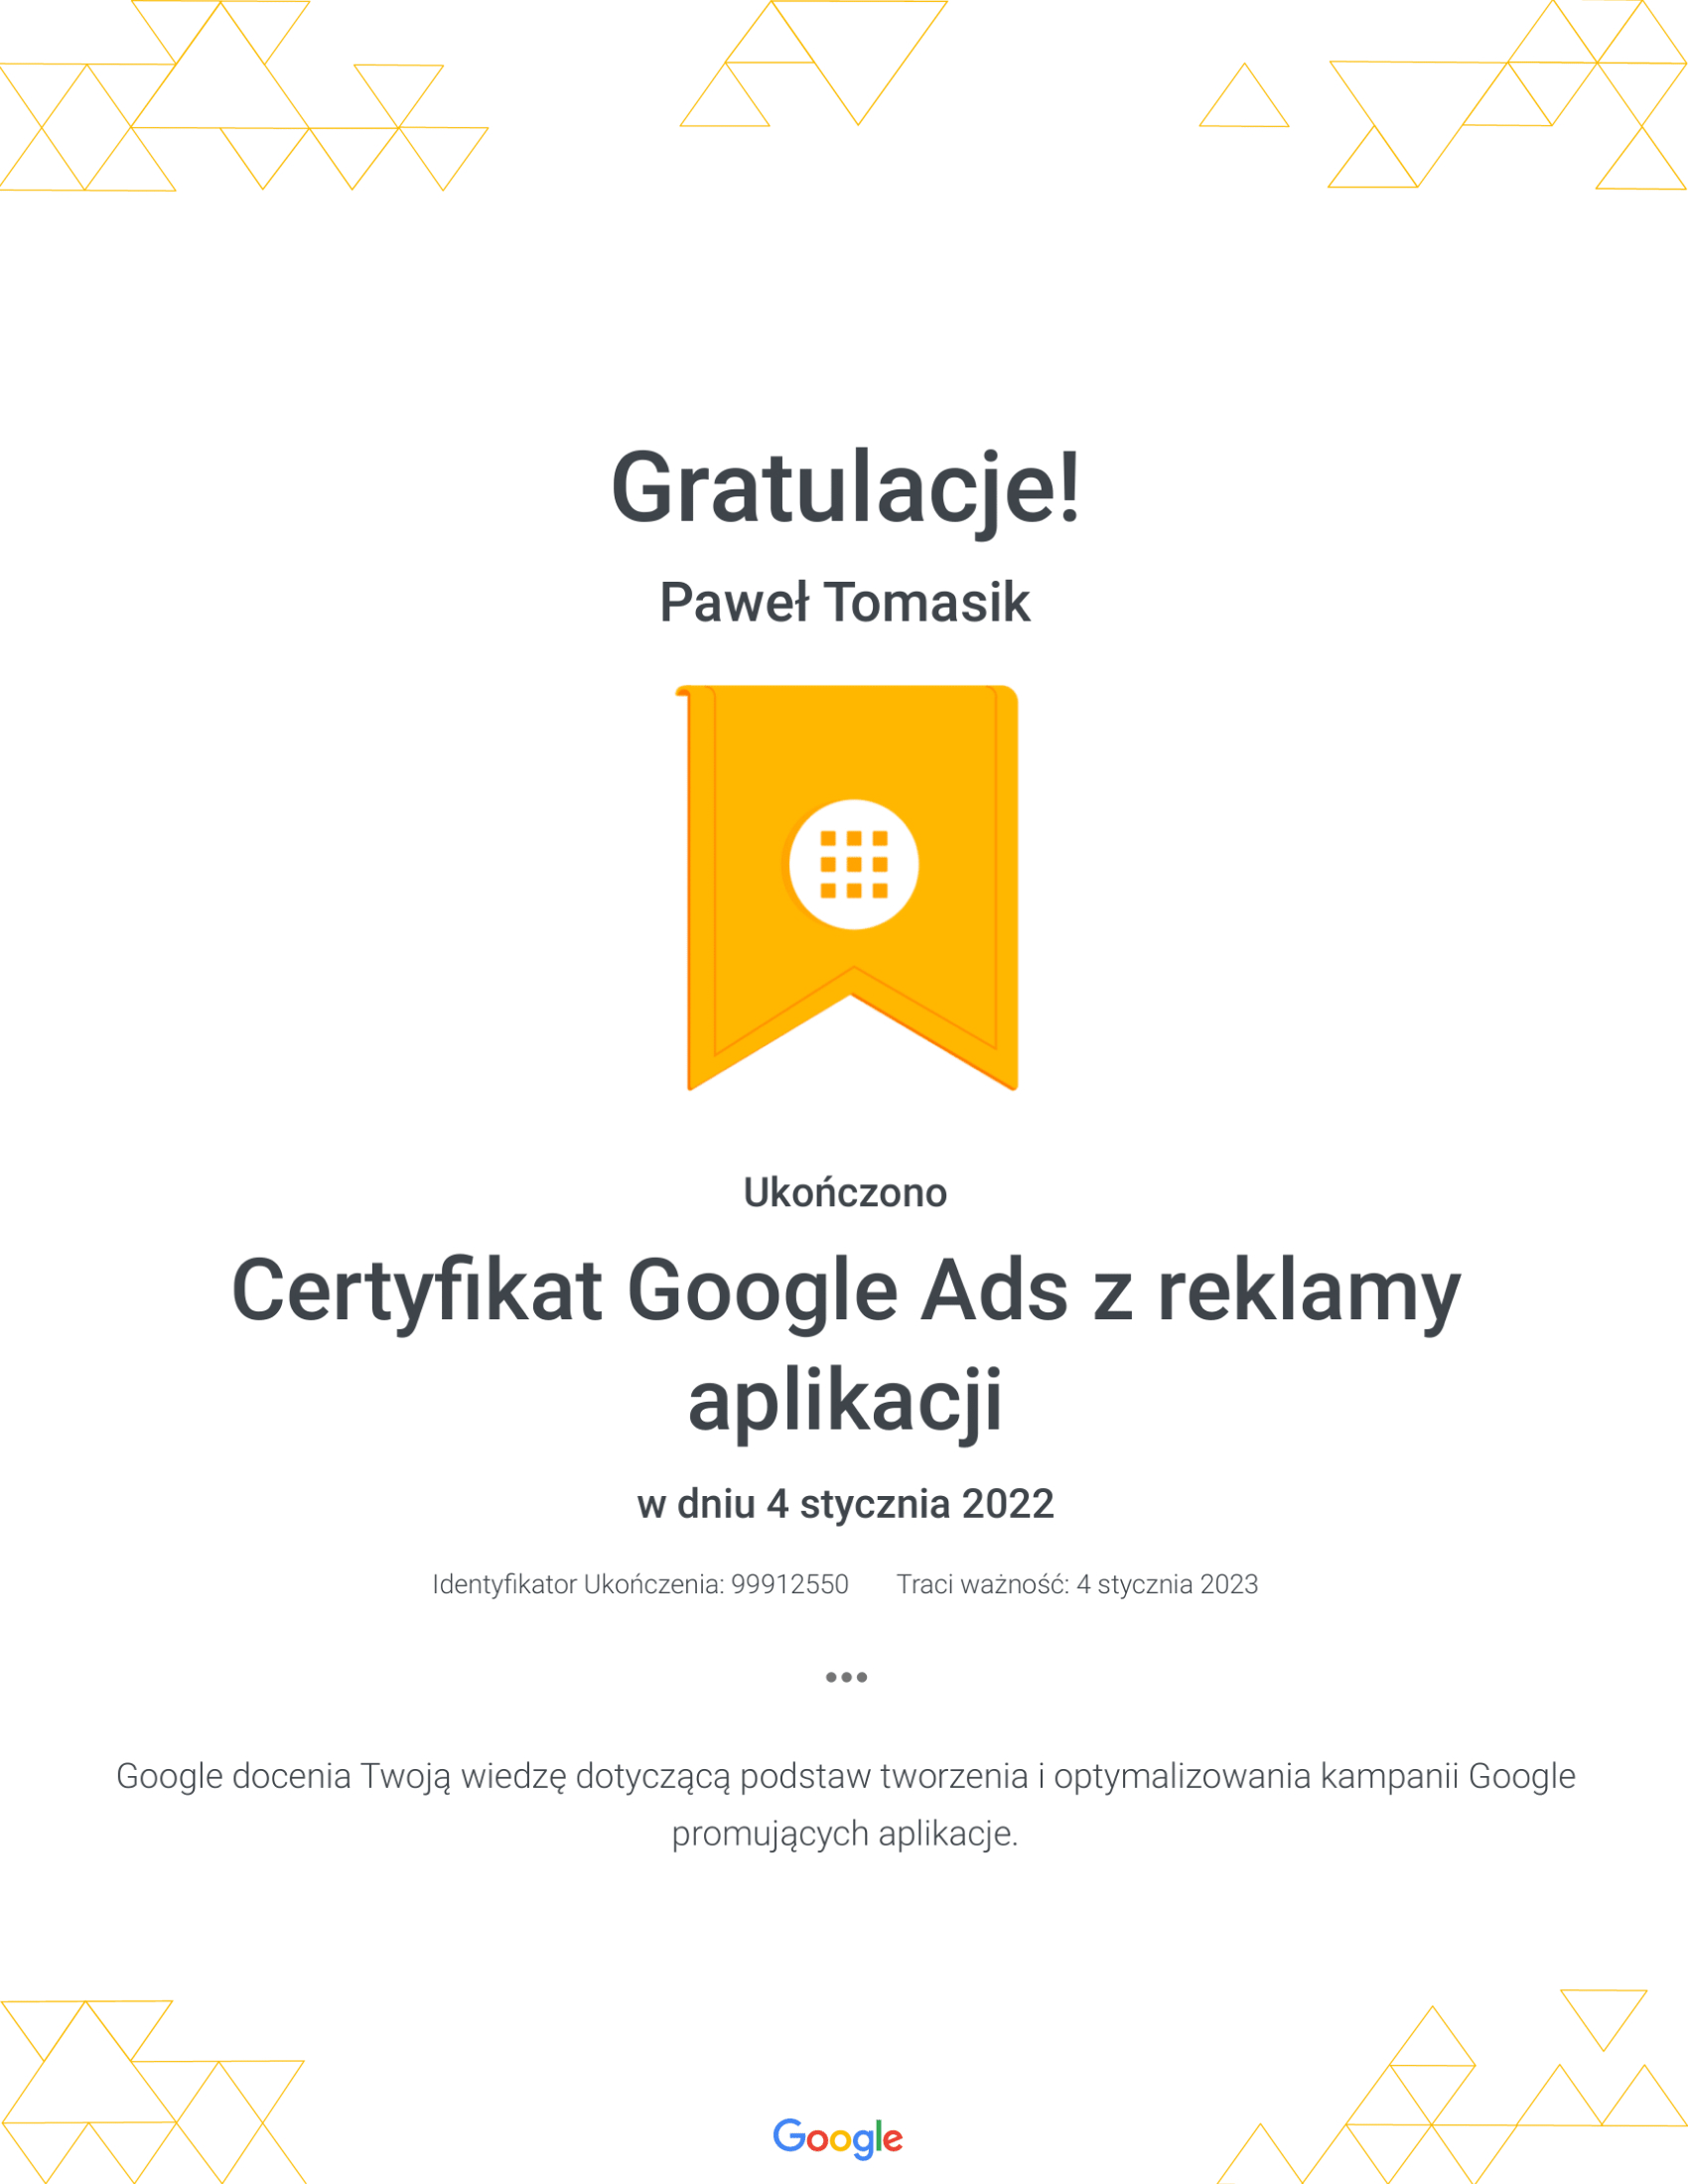 Google - Paweł Tomasik - reklamy aplikacji